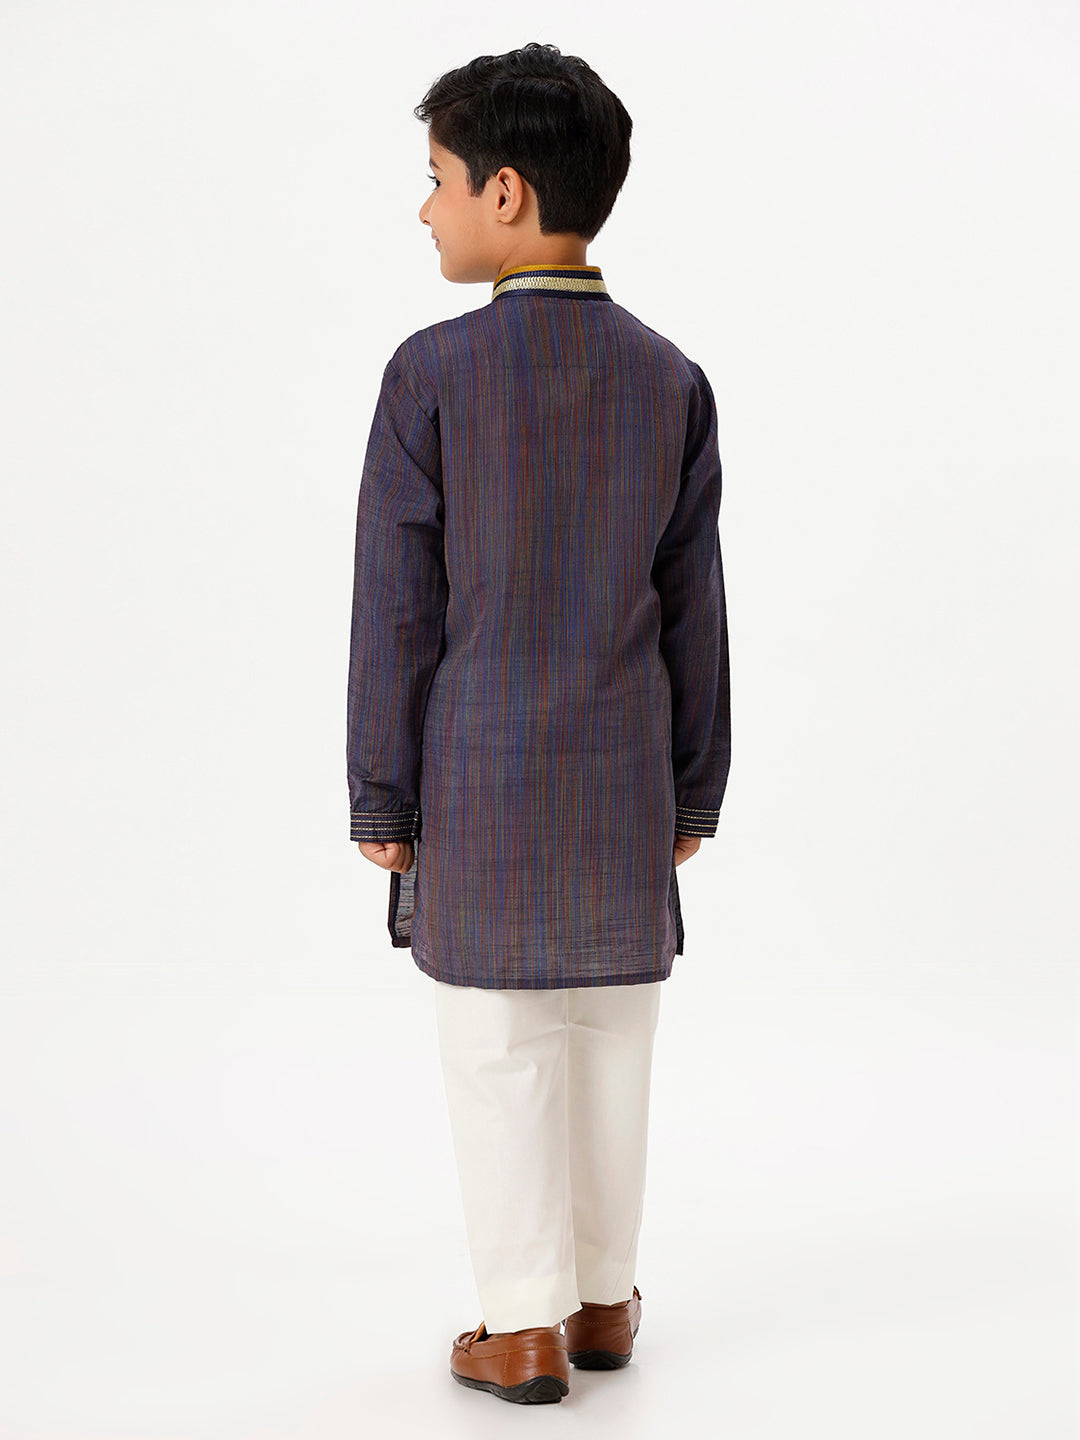 Boys Cotton Embellished Neckline Full Sleeves Navy Kurta with Pyjama Pant Combo EMD6-Back view